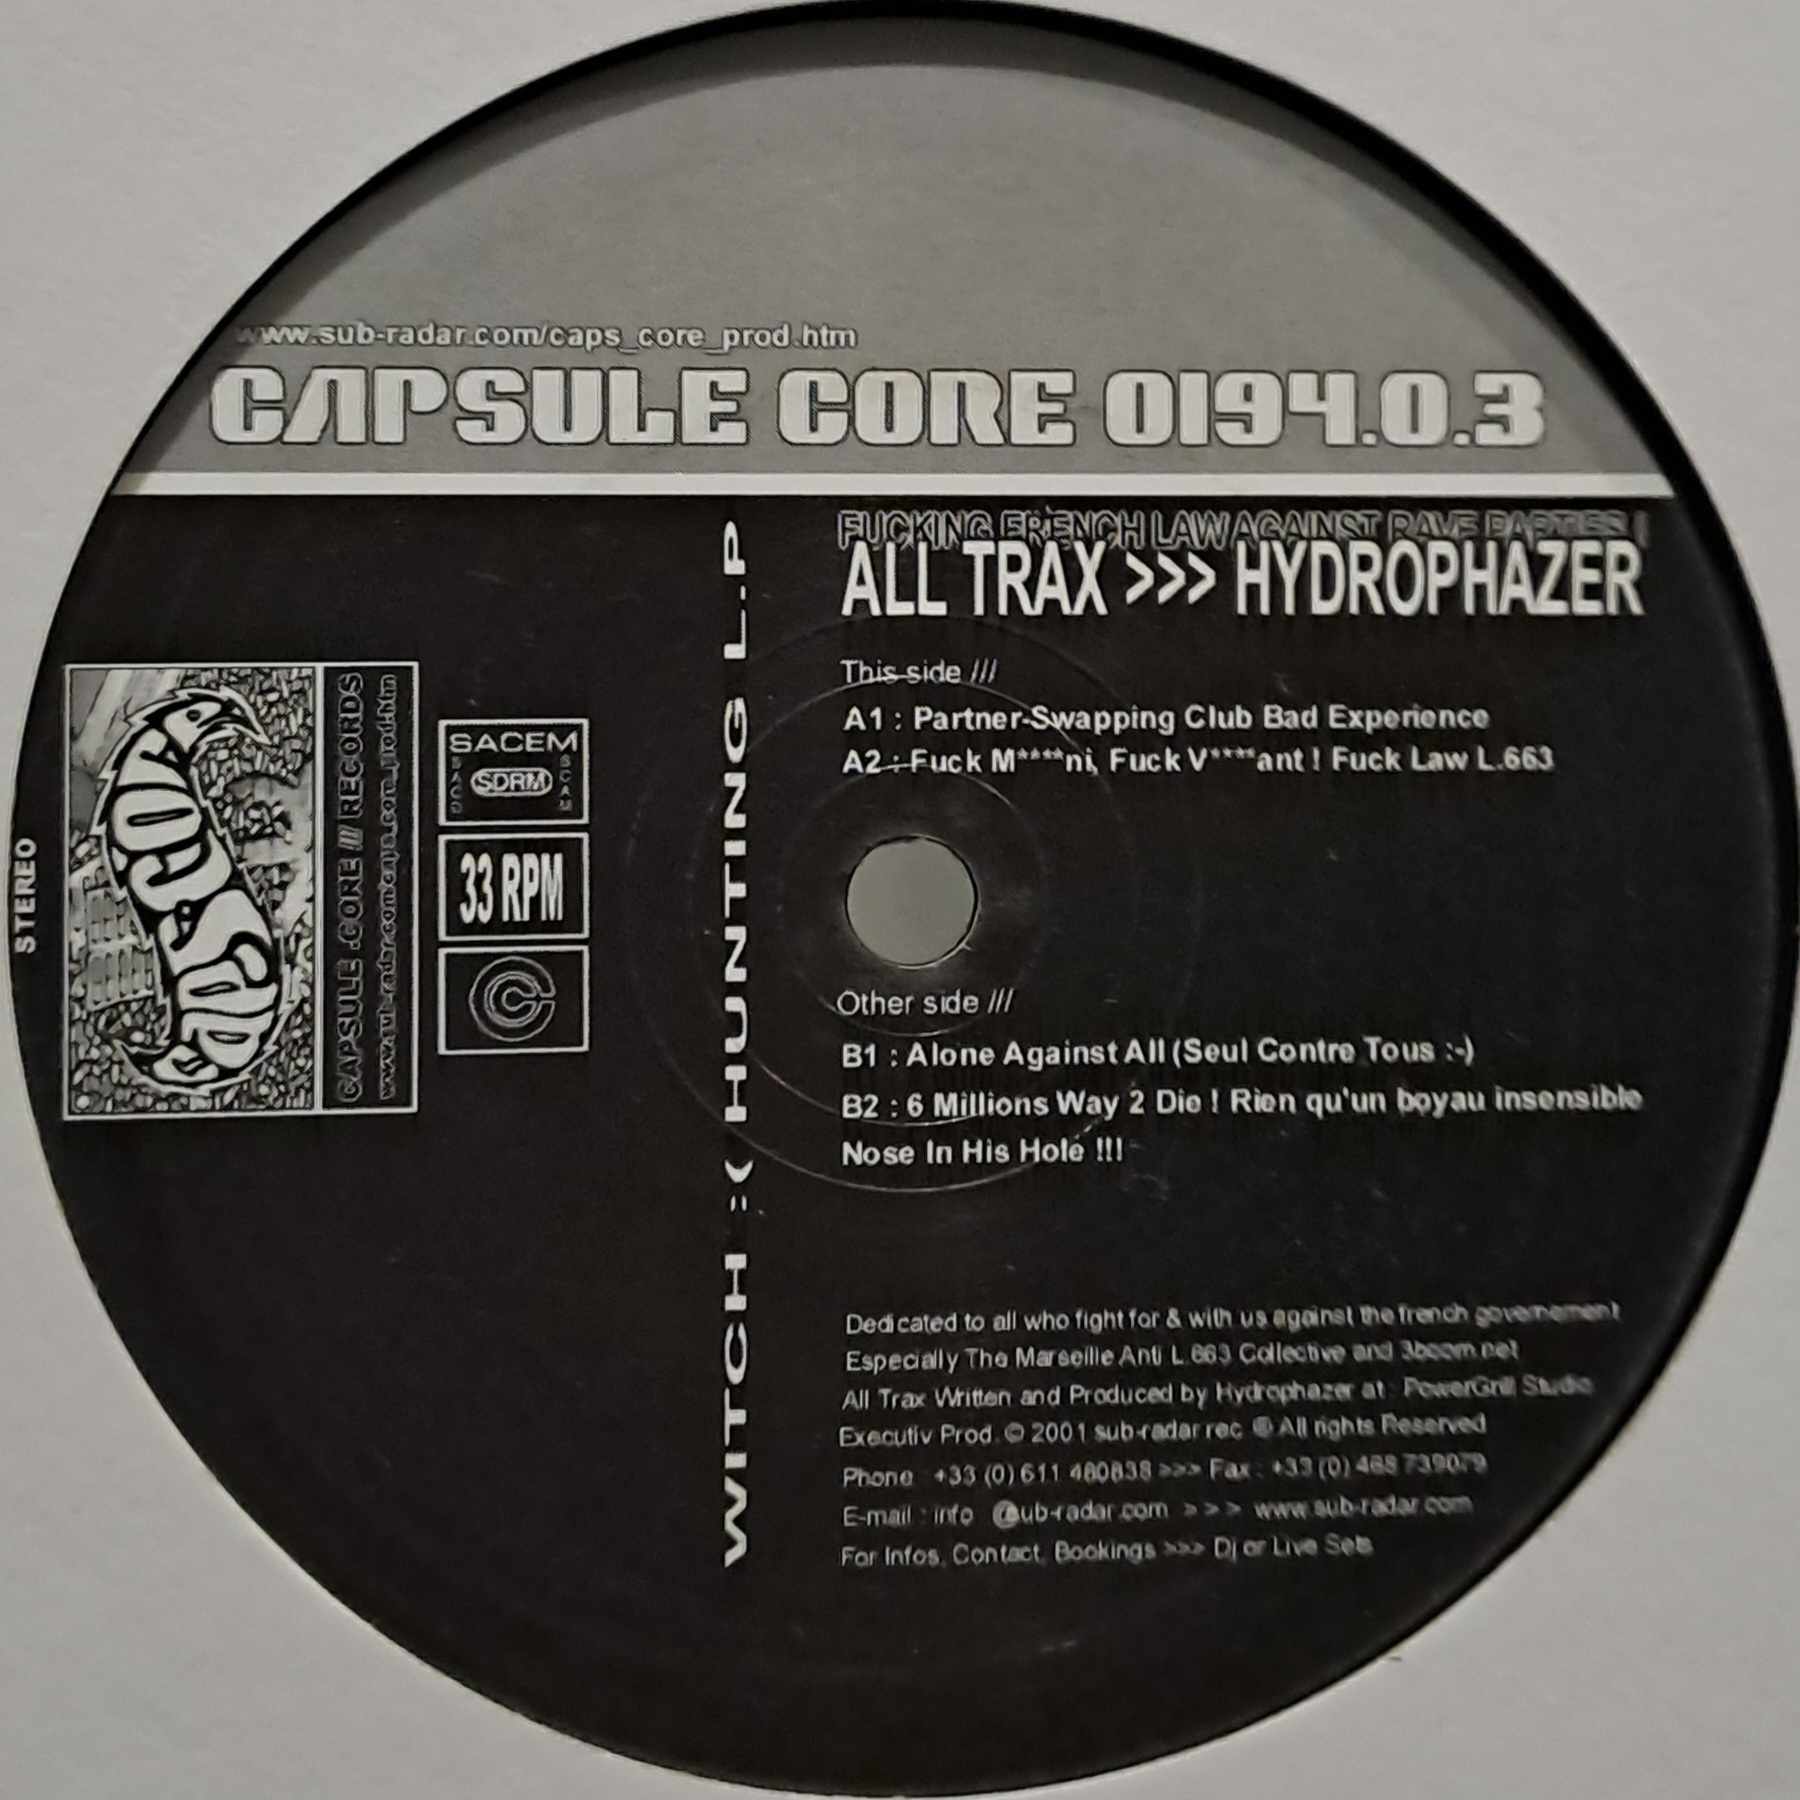 Capsule Core 03 - vinyle hardcore